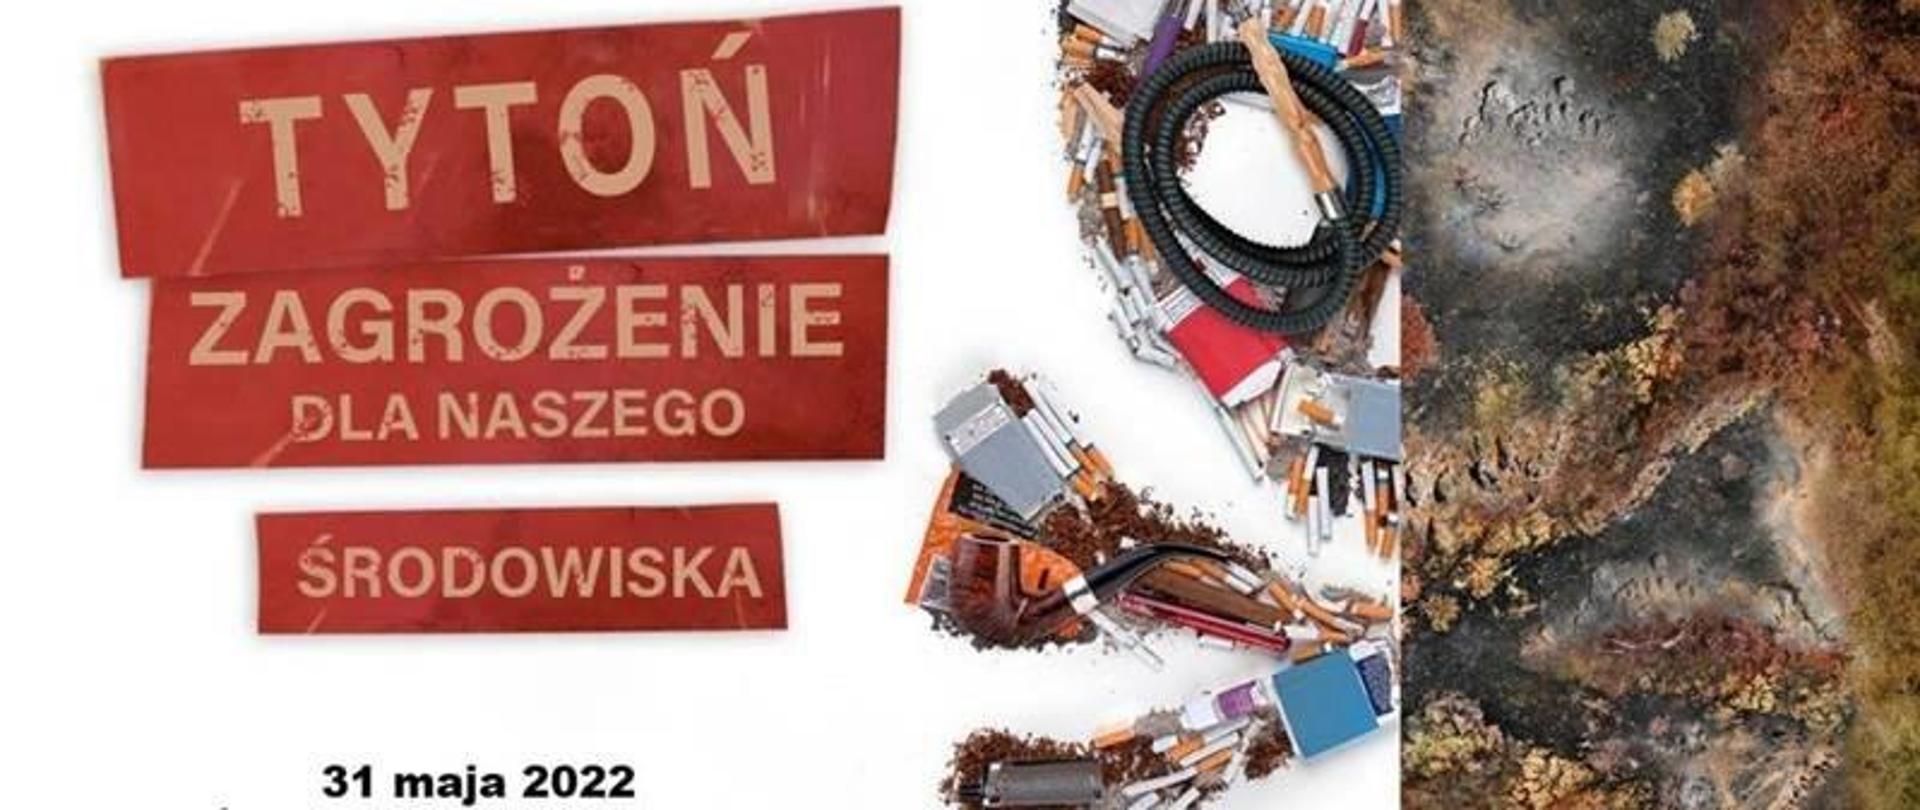 Plakat przedstawiający czaszkę wykonaną z papierosów i innych przedmiotów związanych z tytoniem. "Światowy Dzień Bez Tytoniu. Tytoń-zagrożenie dla naszego środowiska. 31 maja 2022"